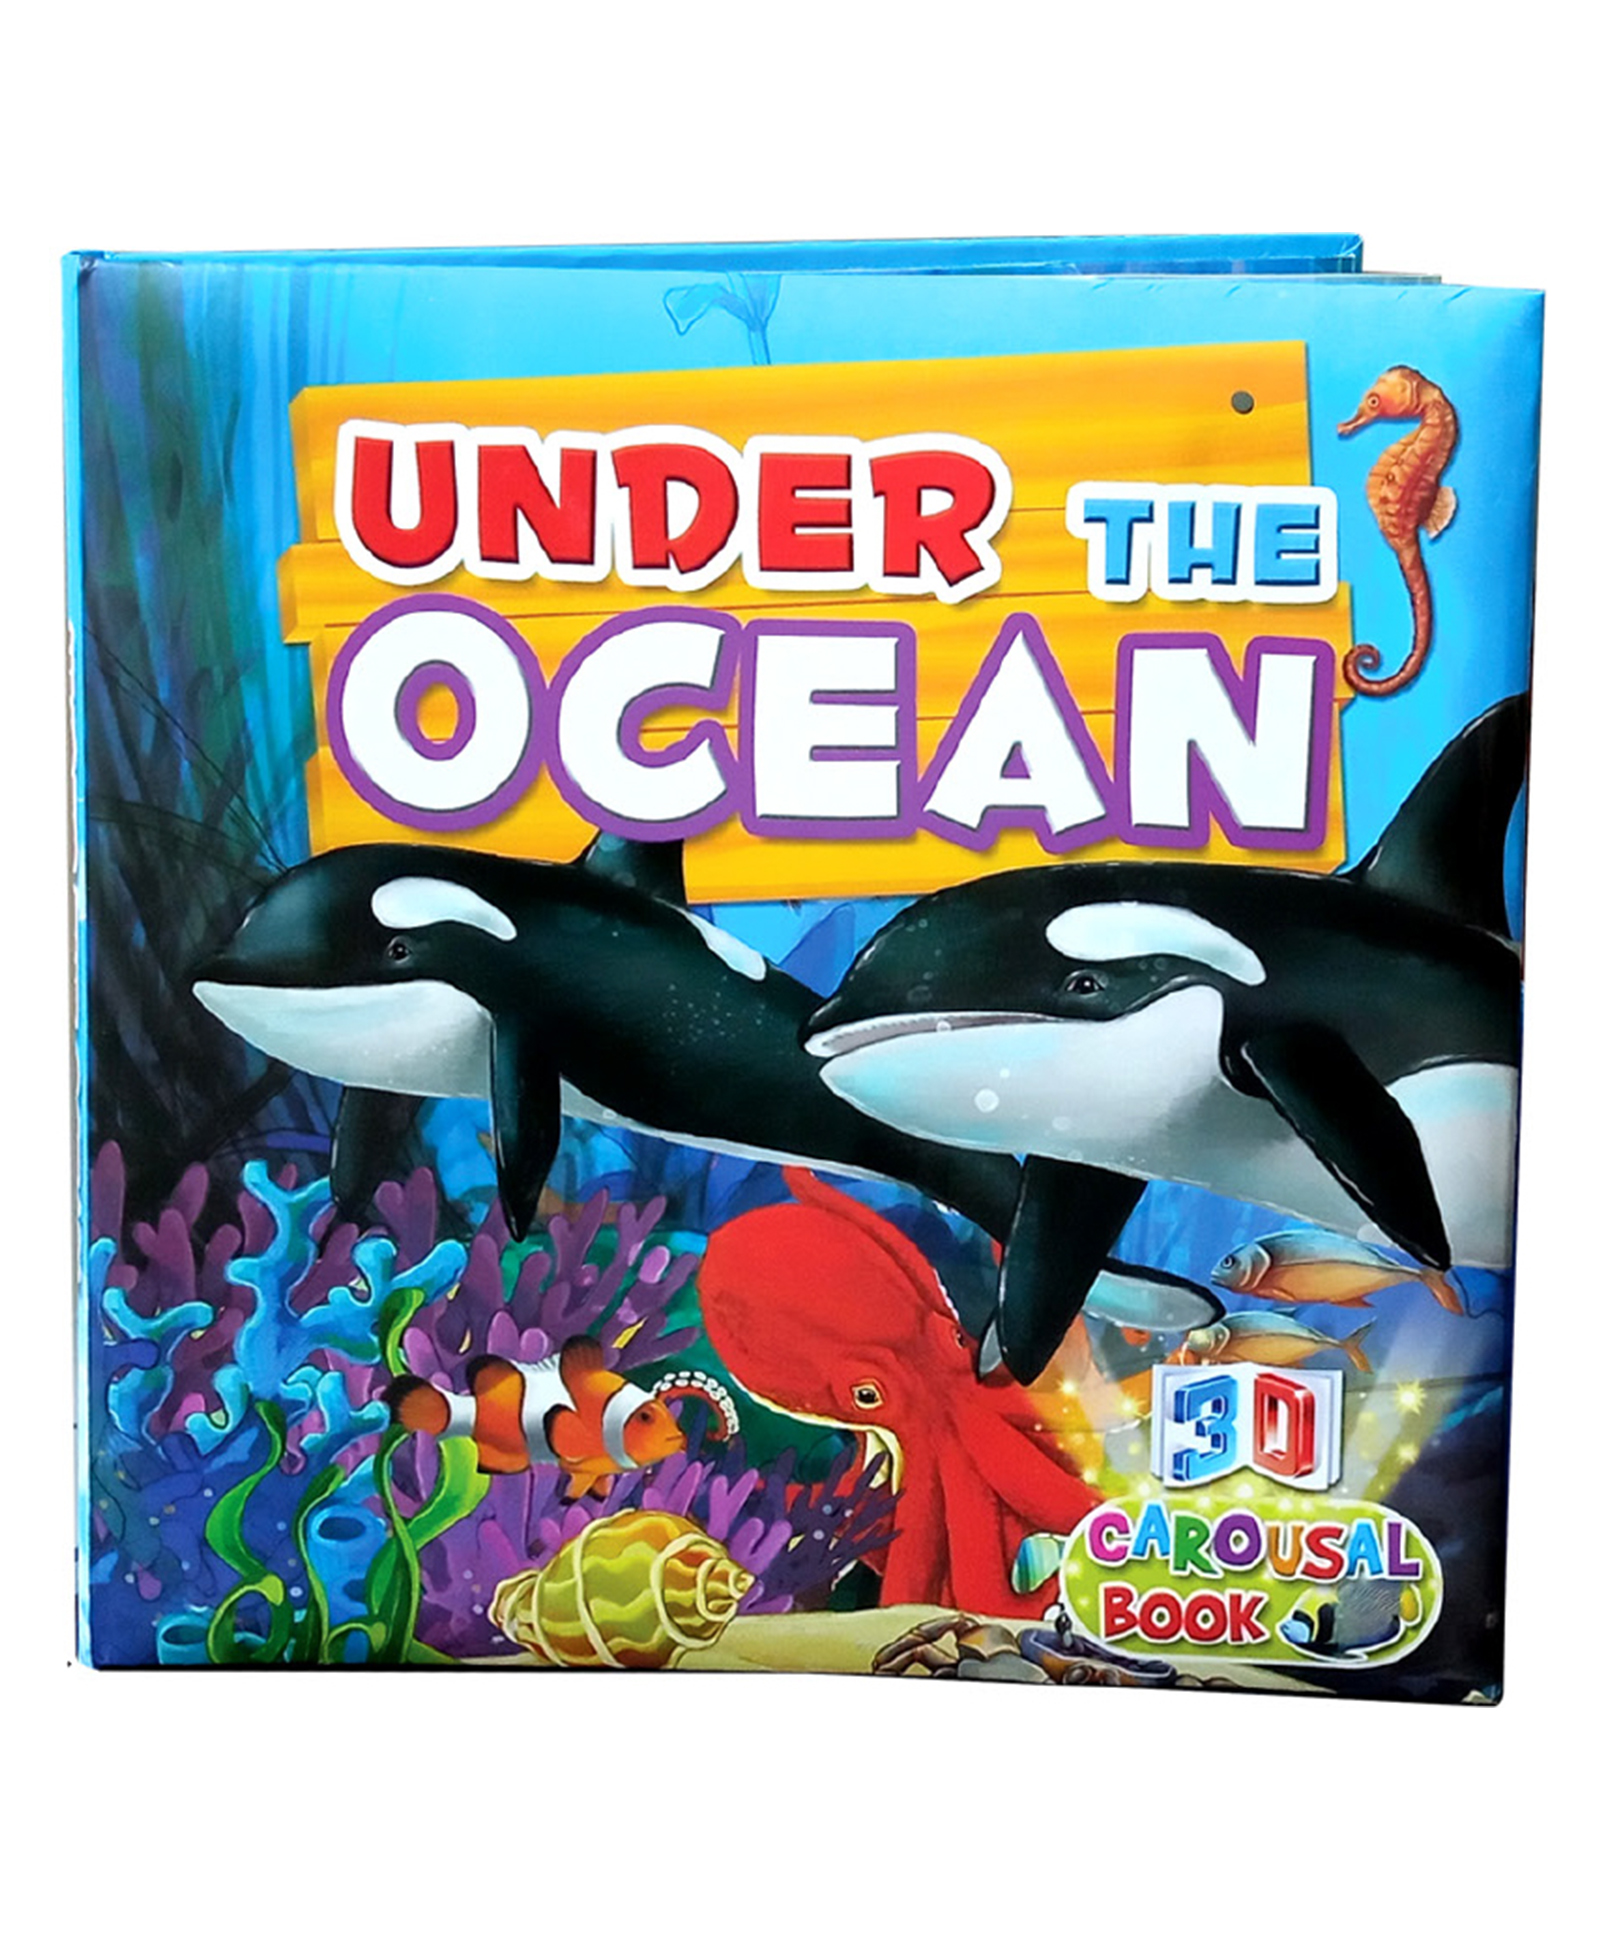 Under the Ocean Amazing 3D Carosol book